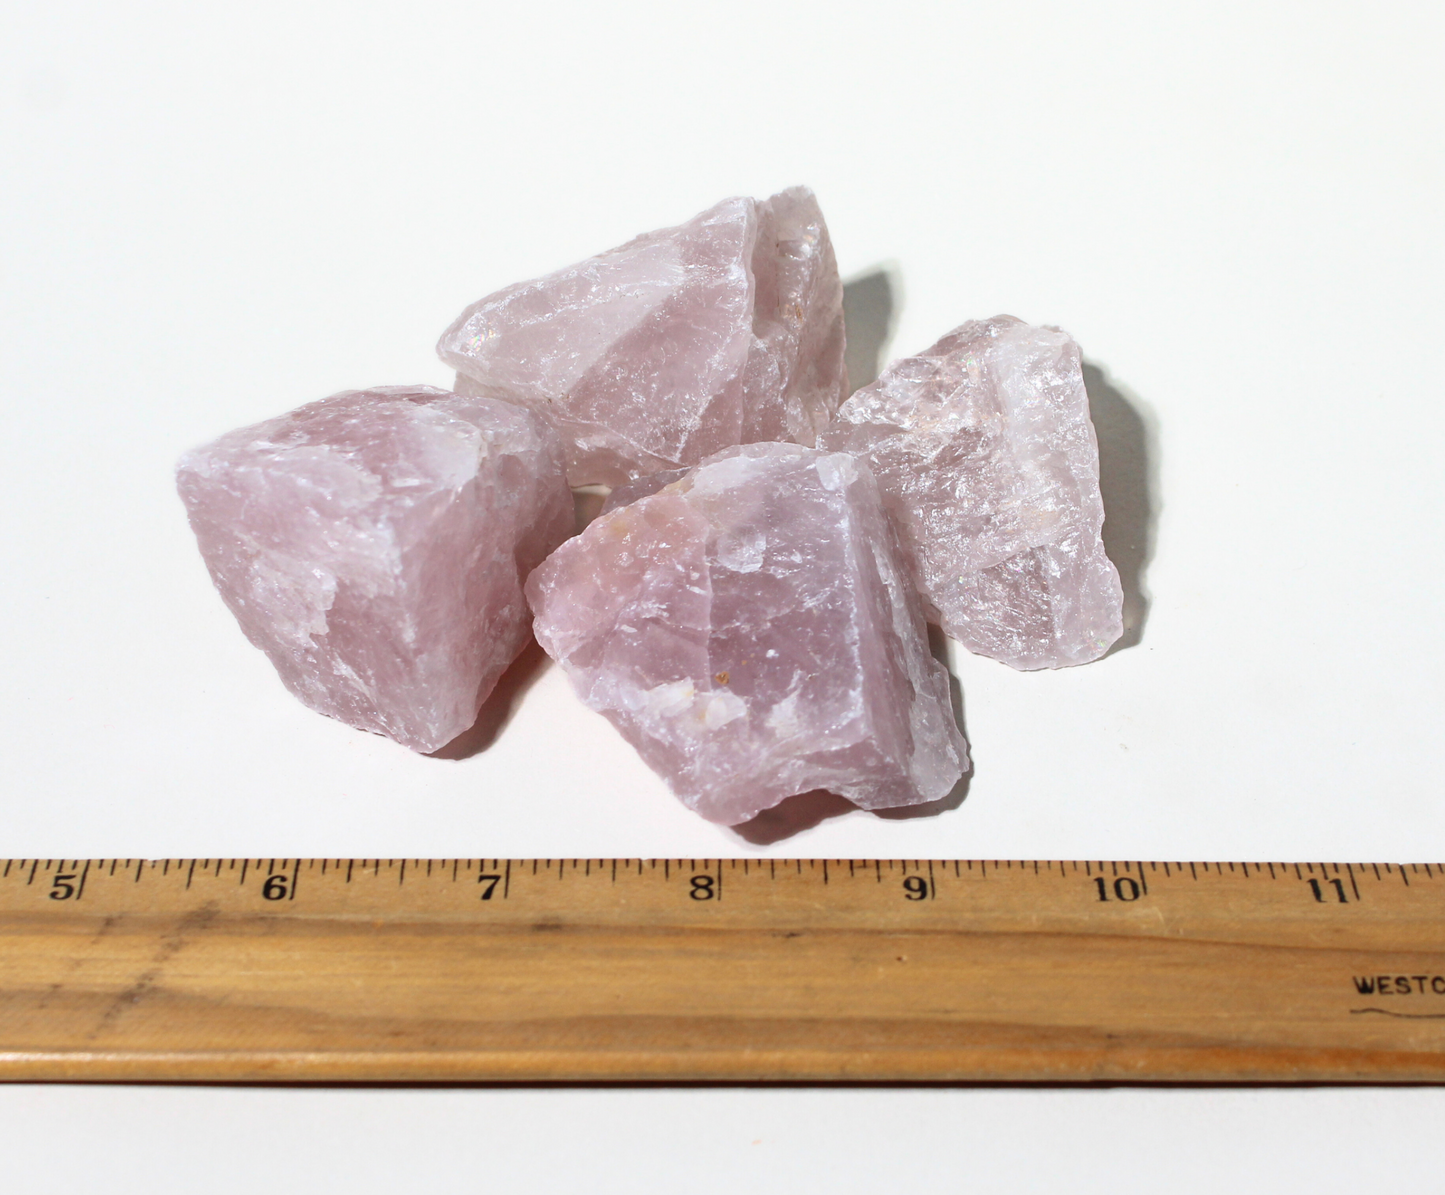 Rose Quartz I Large Tumbling Rocks from Madagascar I 2" - 3" Raw Crystals